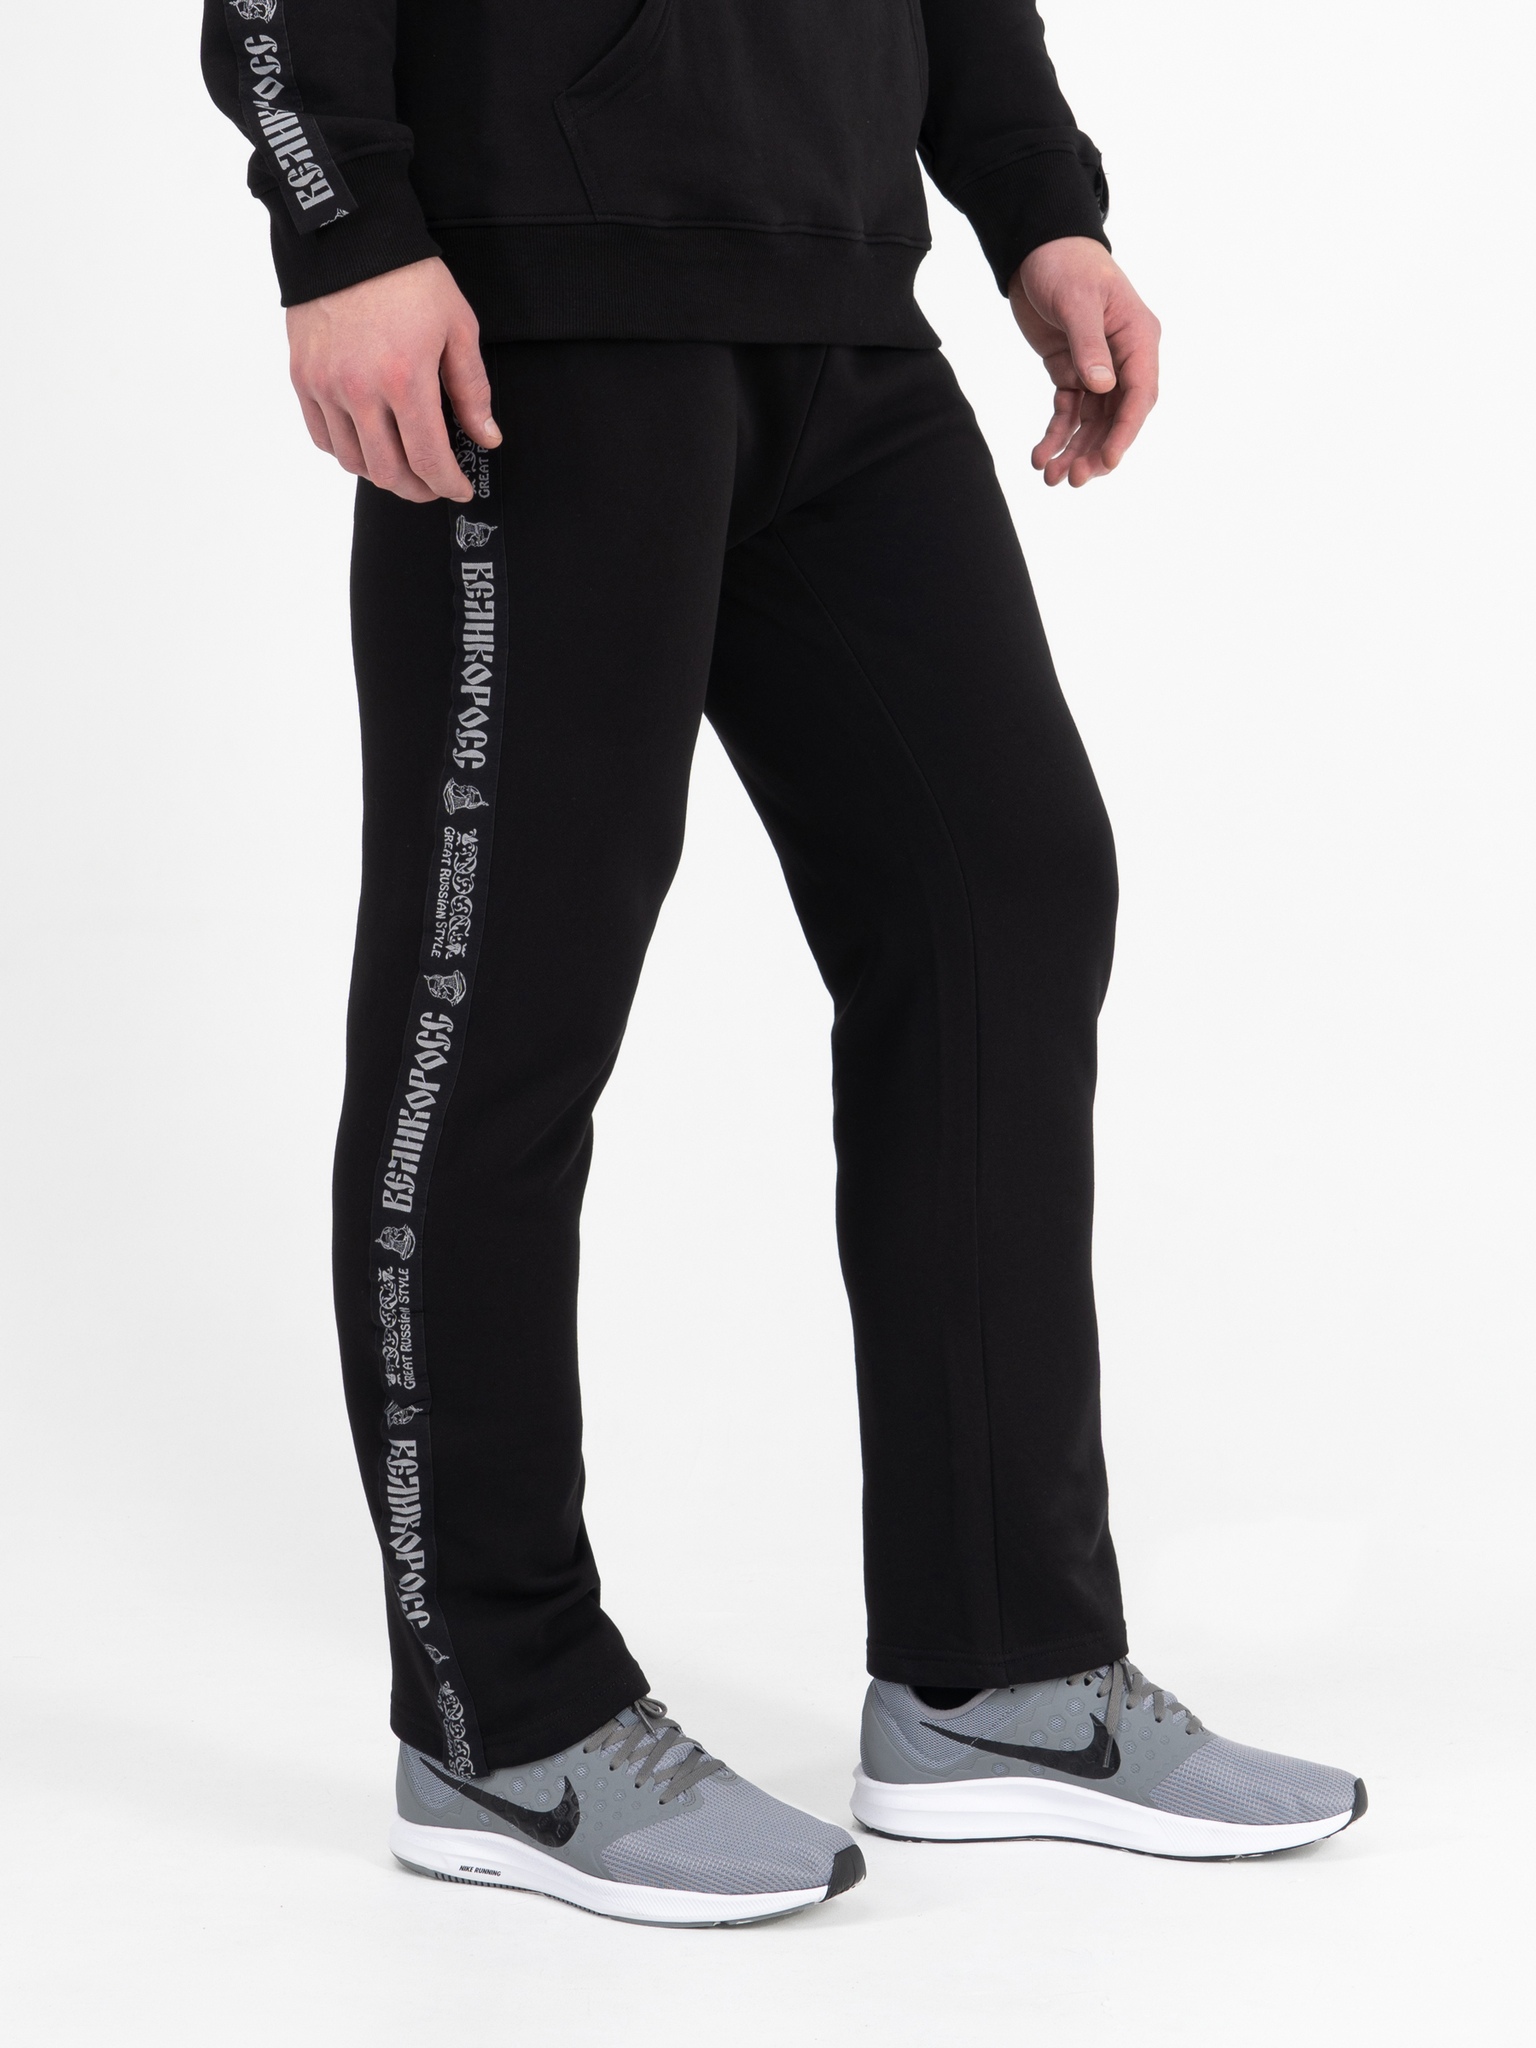 Спортивные брюки мужские Великоросс BM черные 48 RU